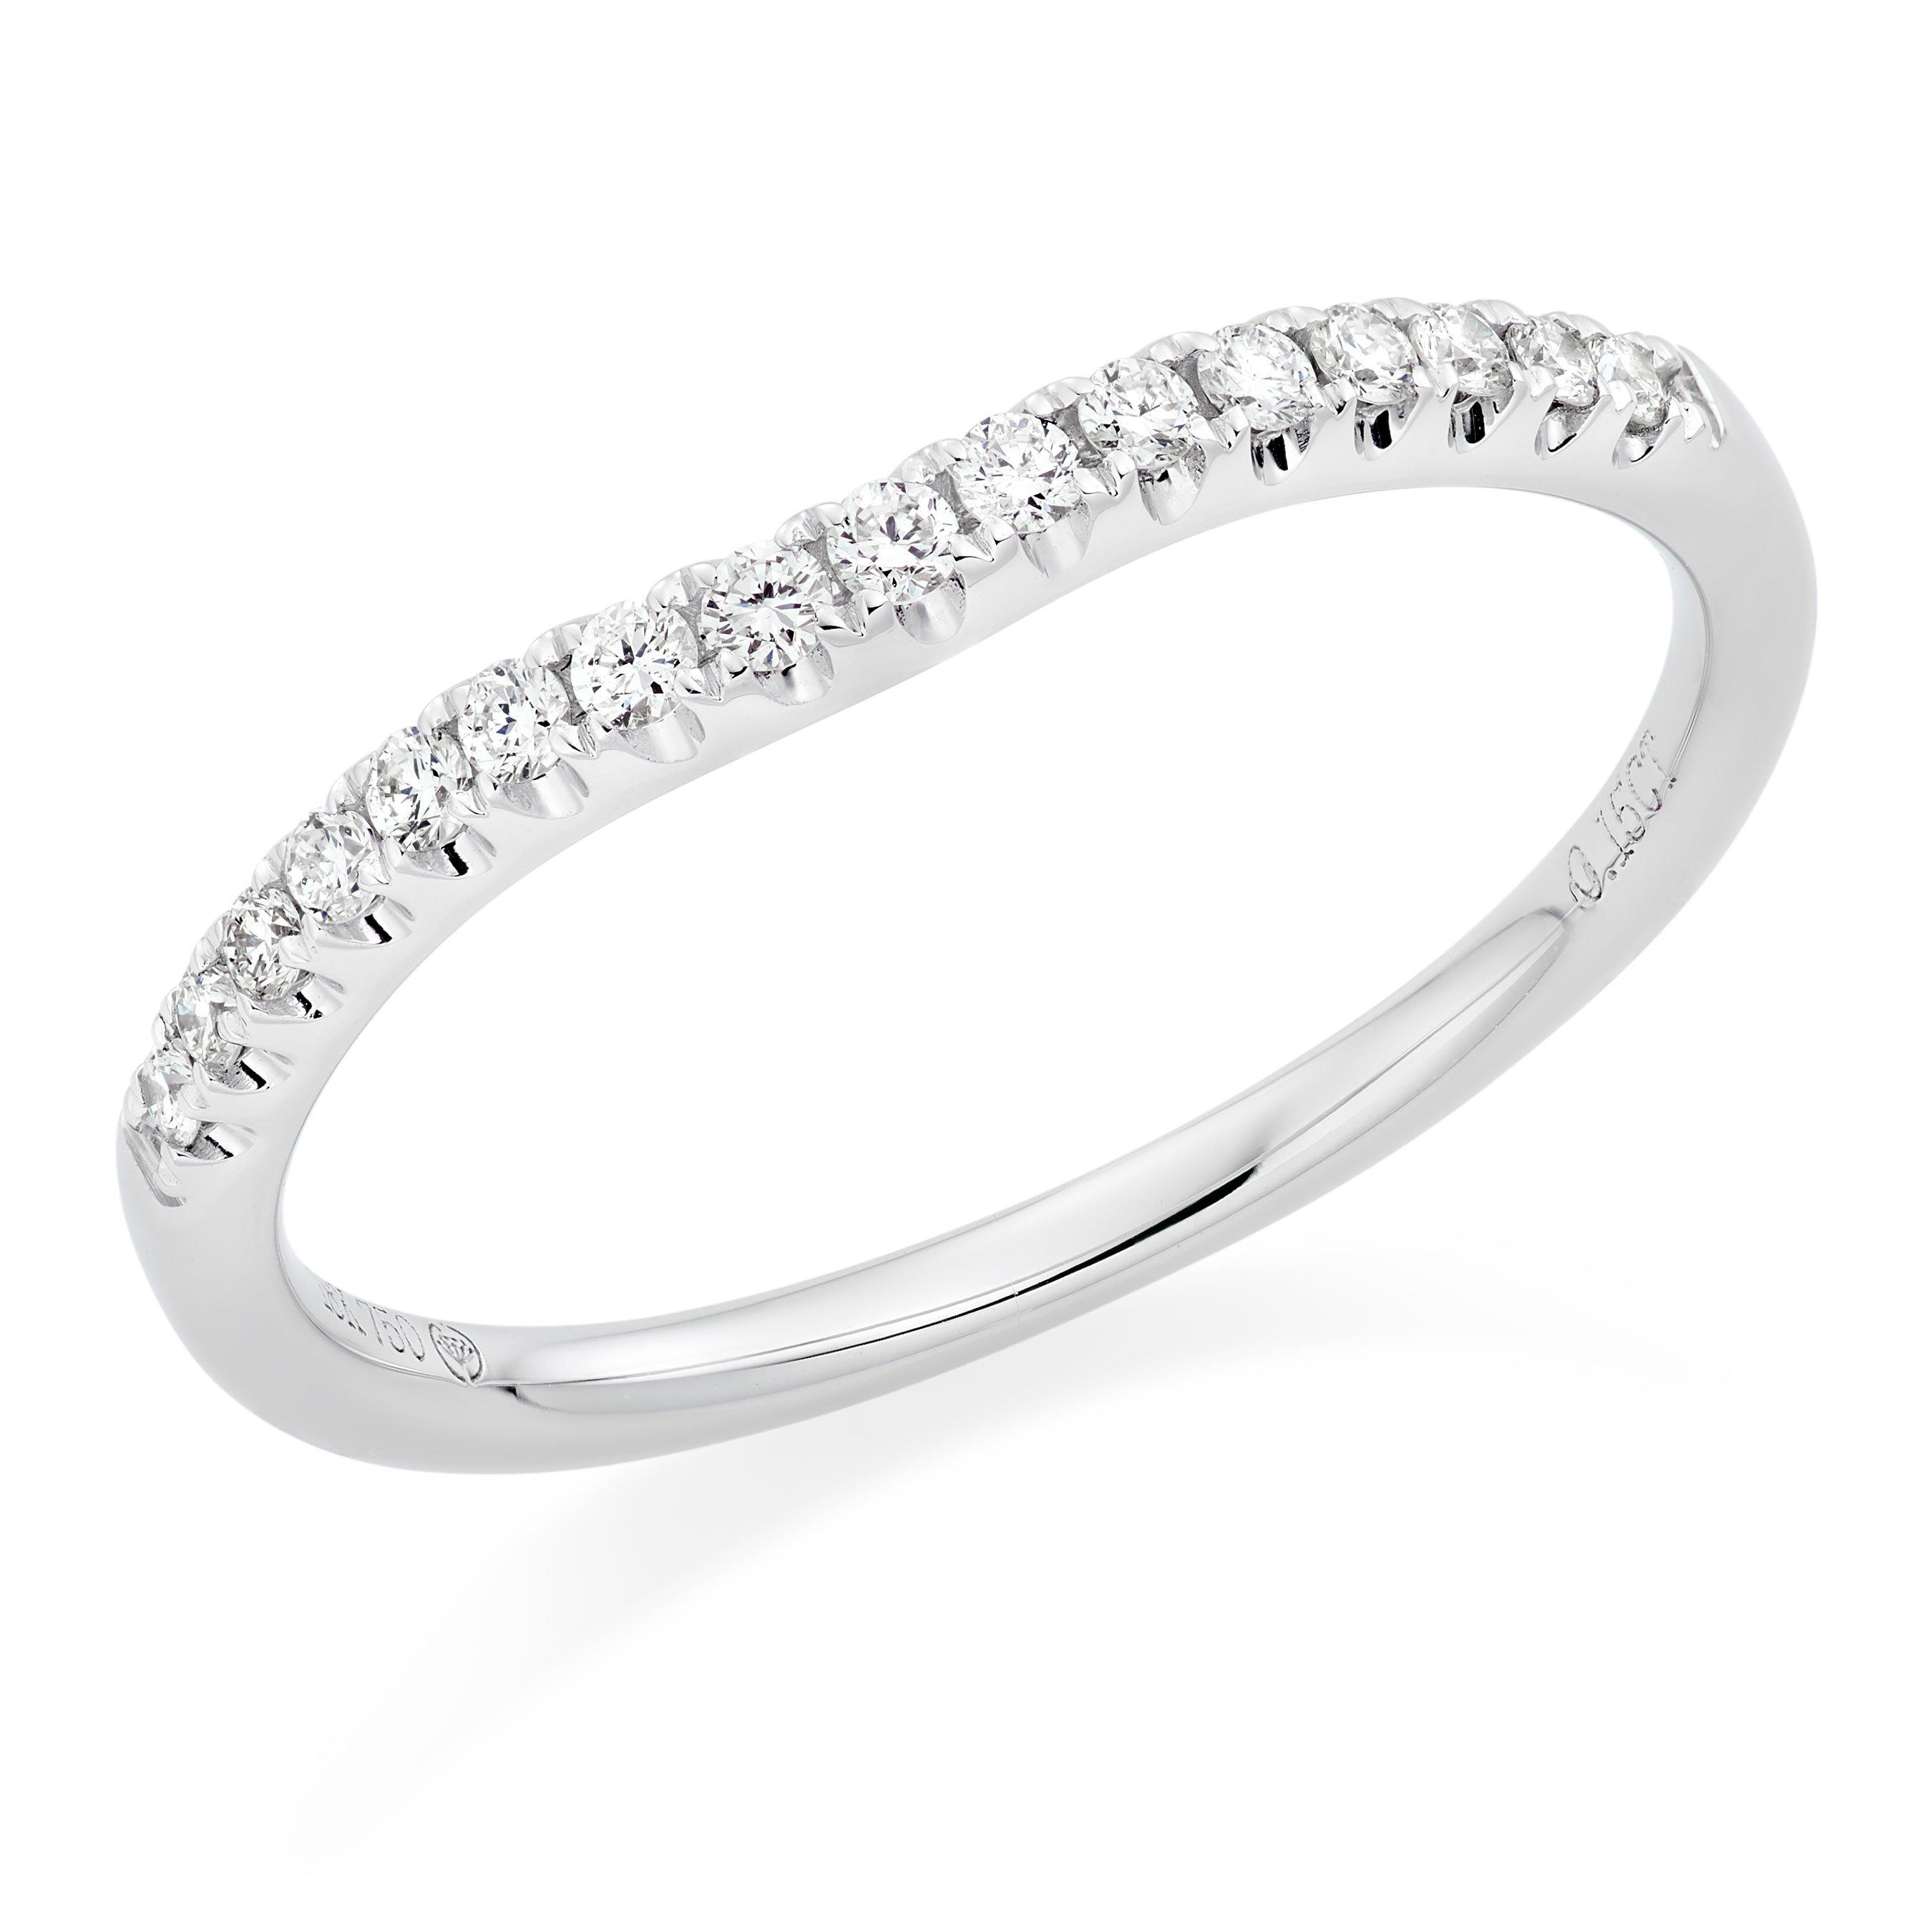 Diamond Wedding Rings | Wedding Rings With Diamonds | Beaverbrooks